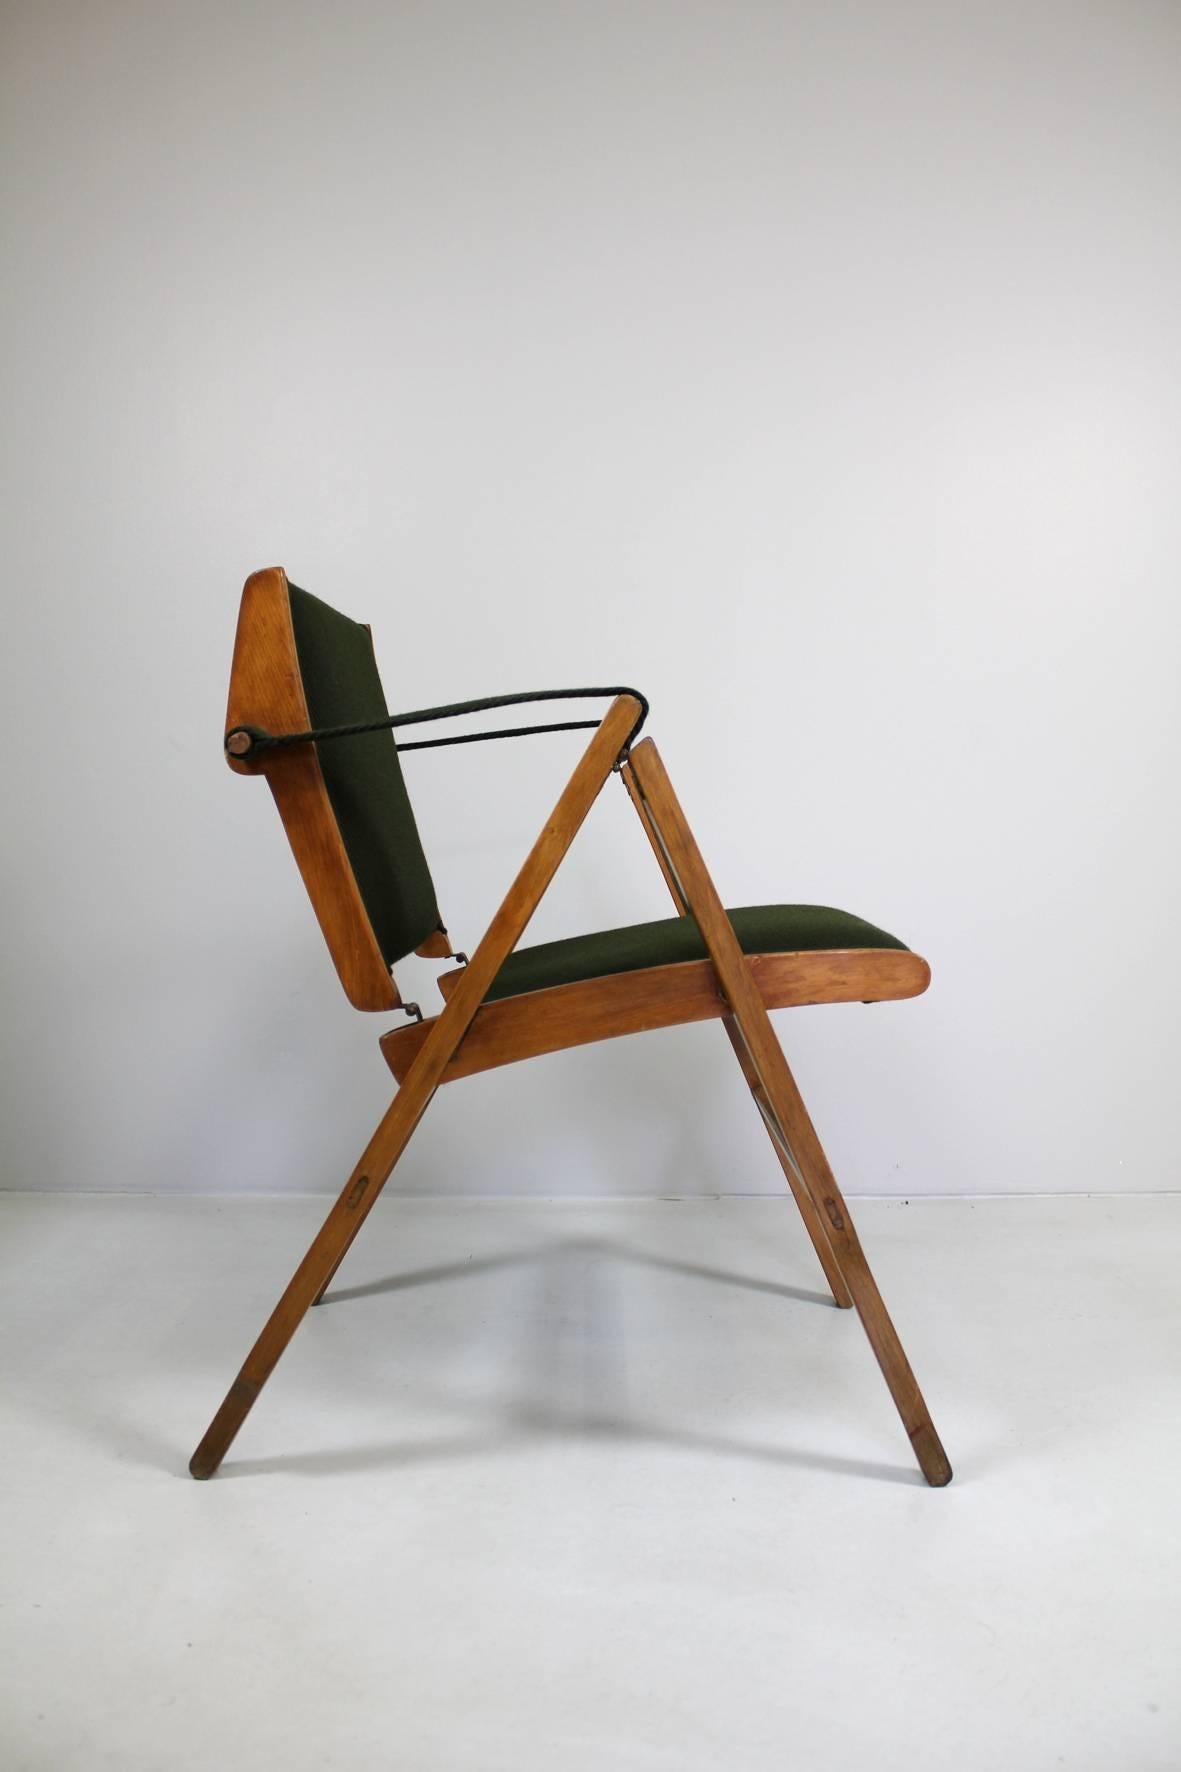 Folding armchair "Bridge" by Marco Zanuso, Arflex, 1951.